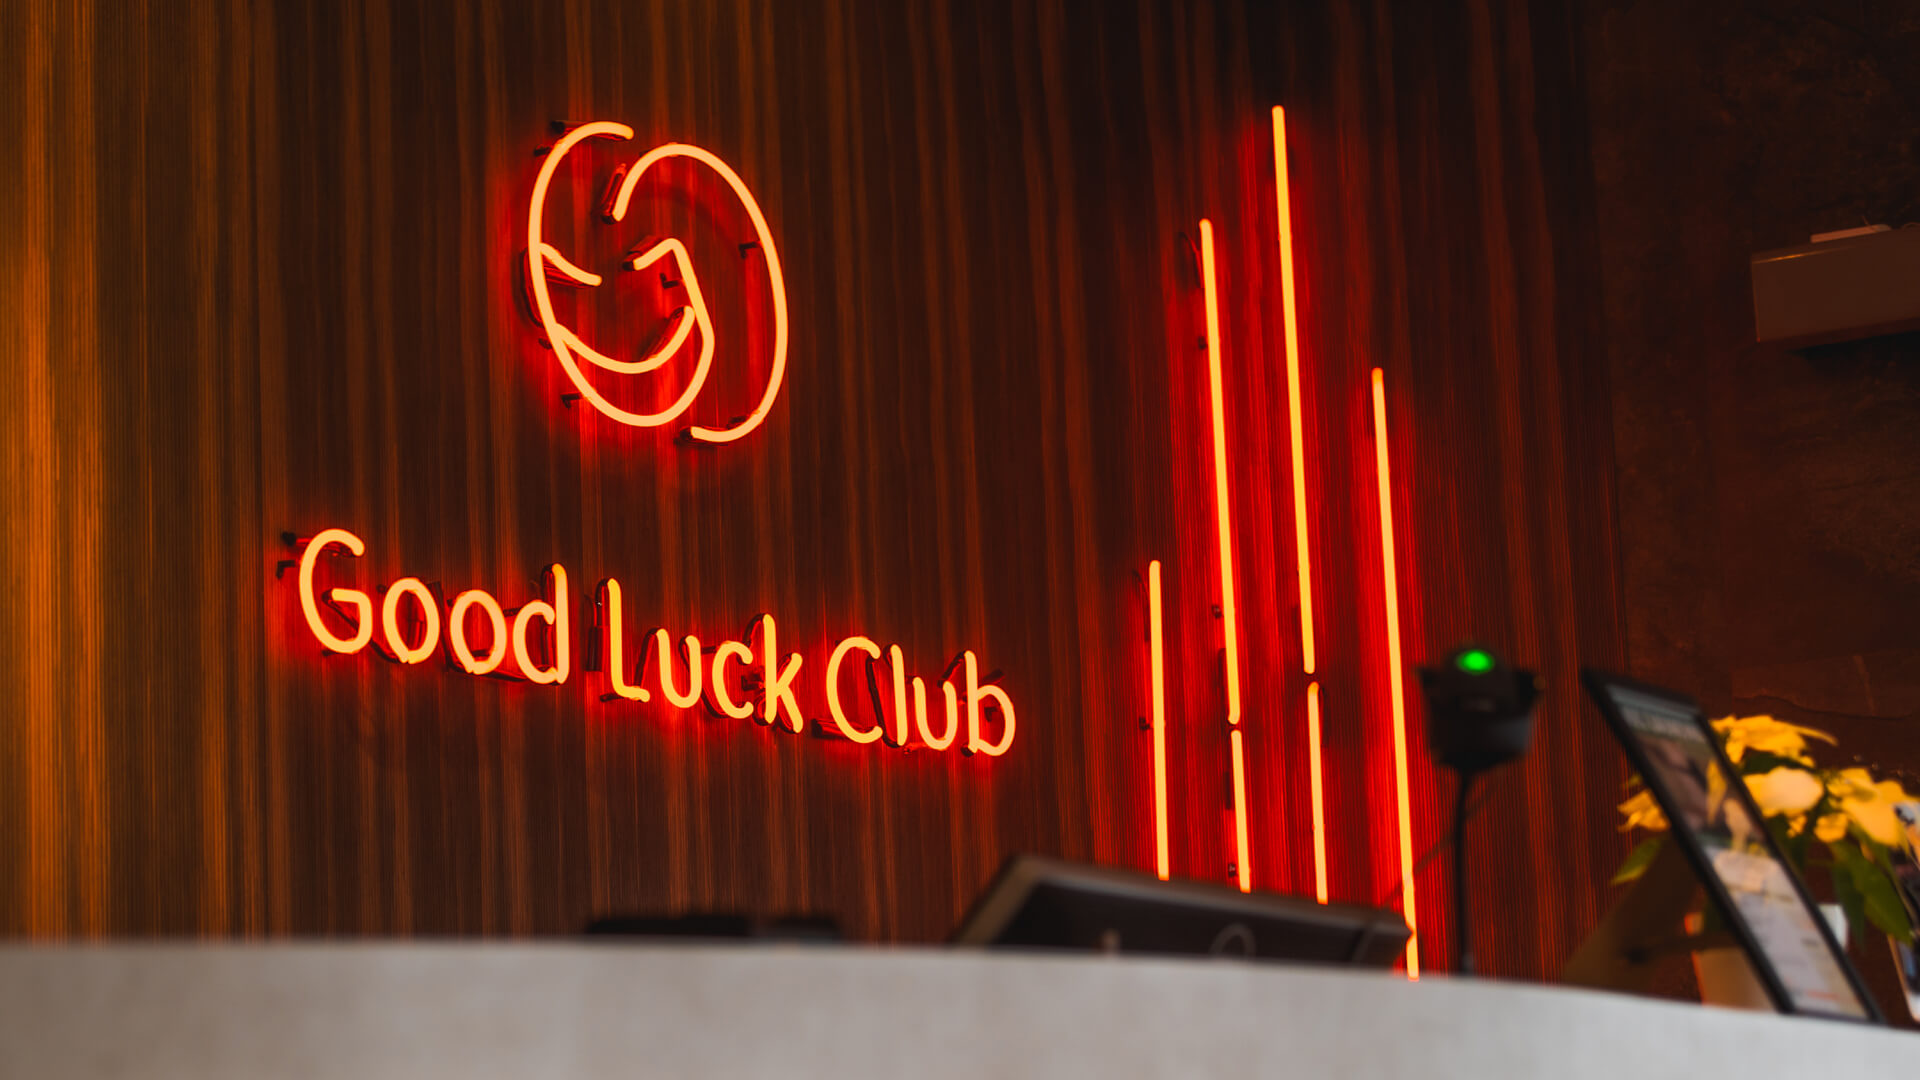 Club de la buena suerte - Cartel de neón rojo en la recepción con el logotipo de la empresa.